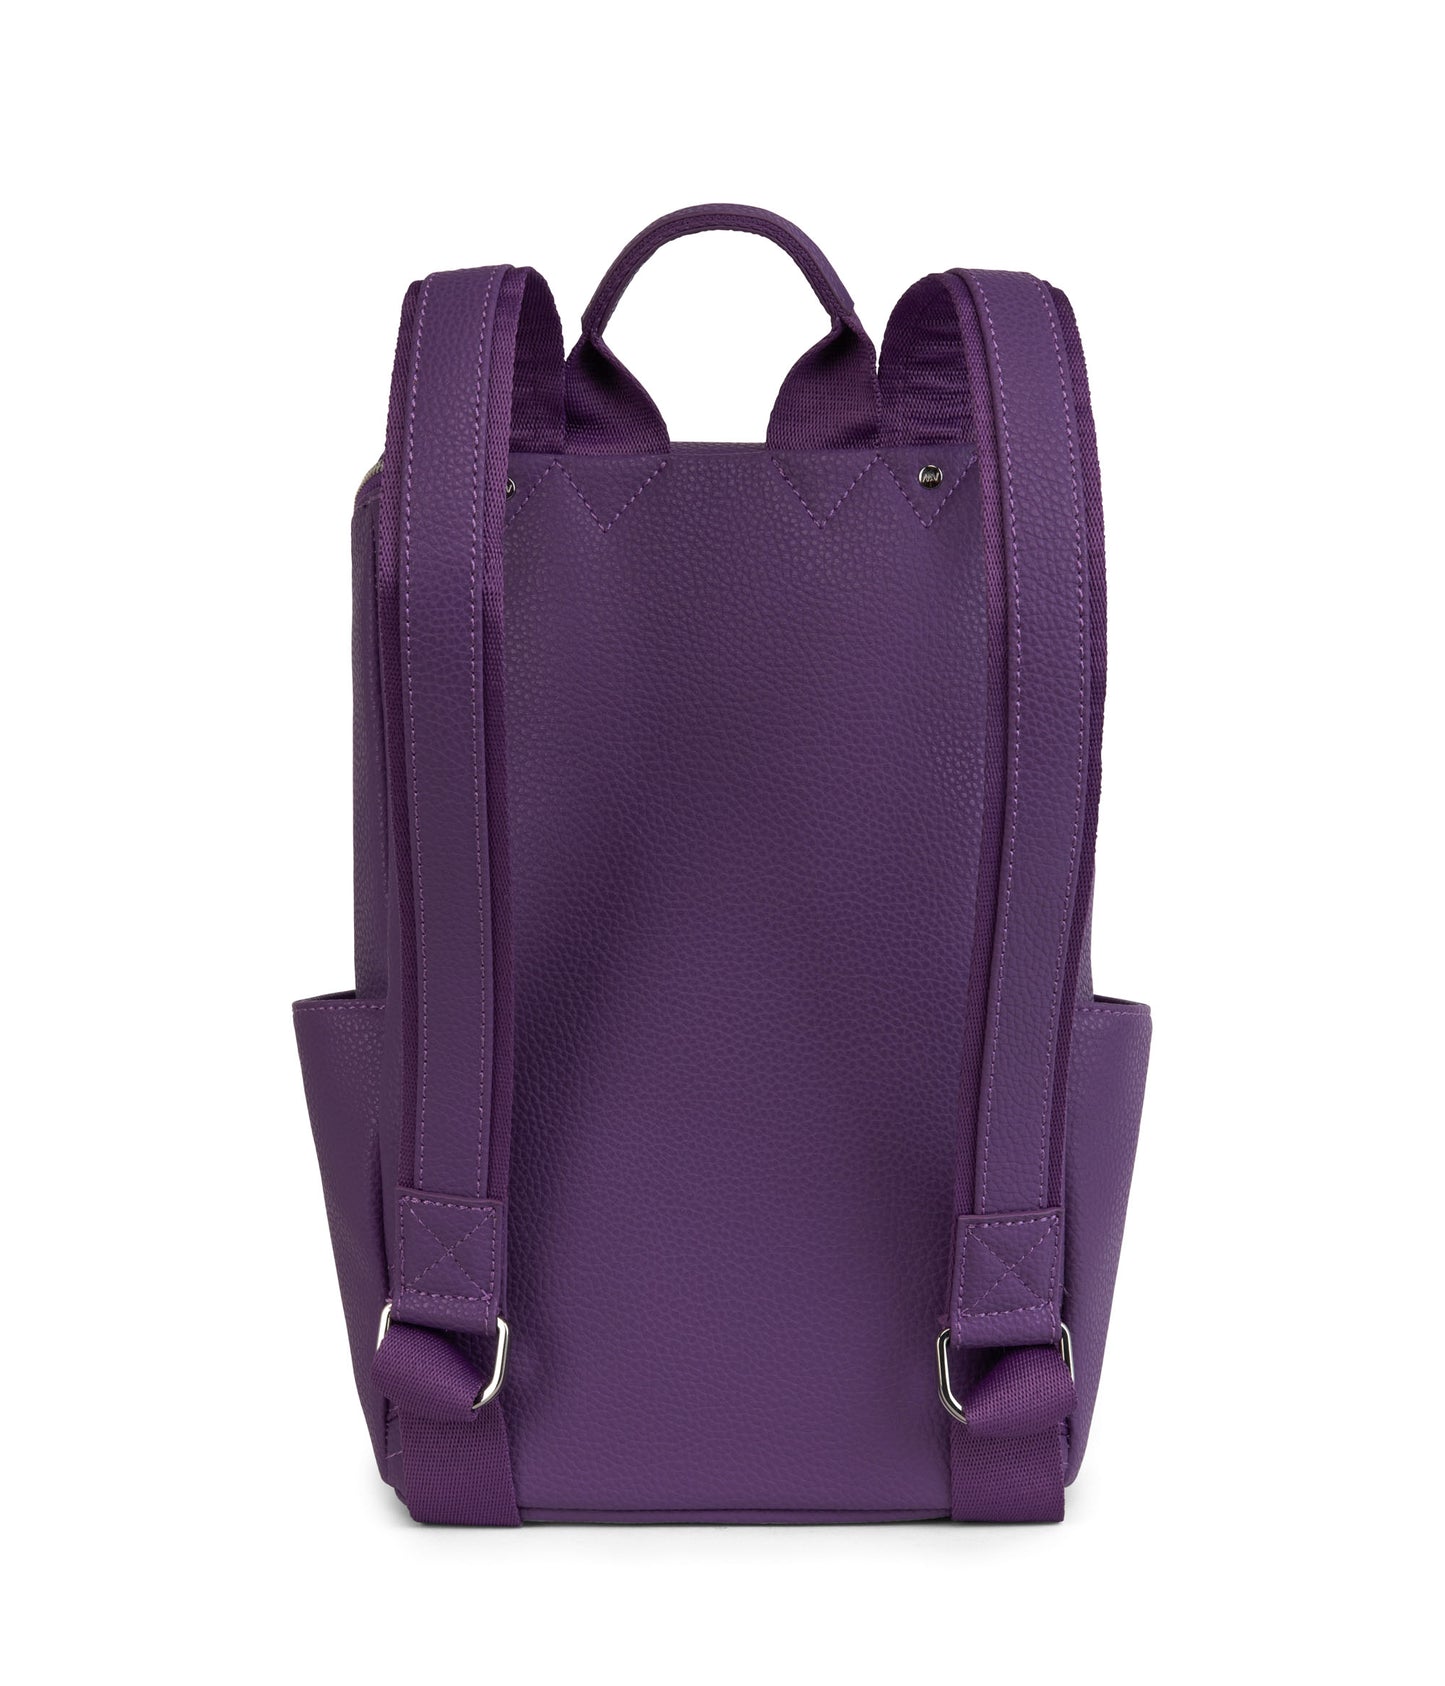 variant:: violet -- brave purity violet